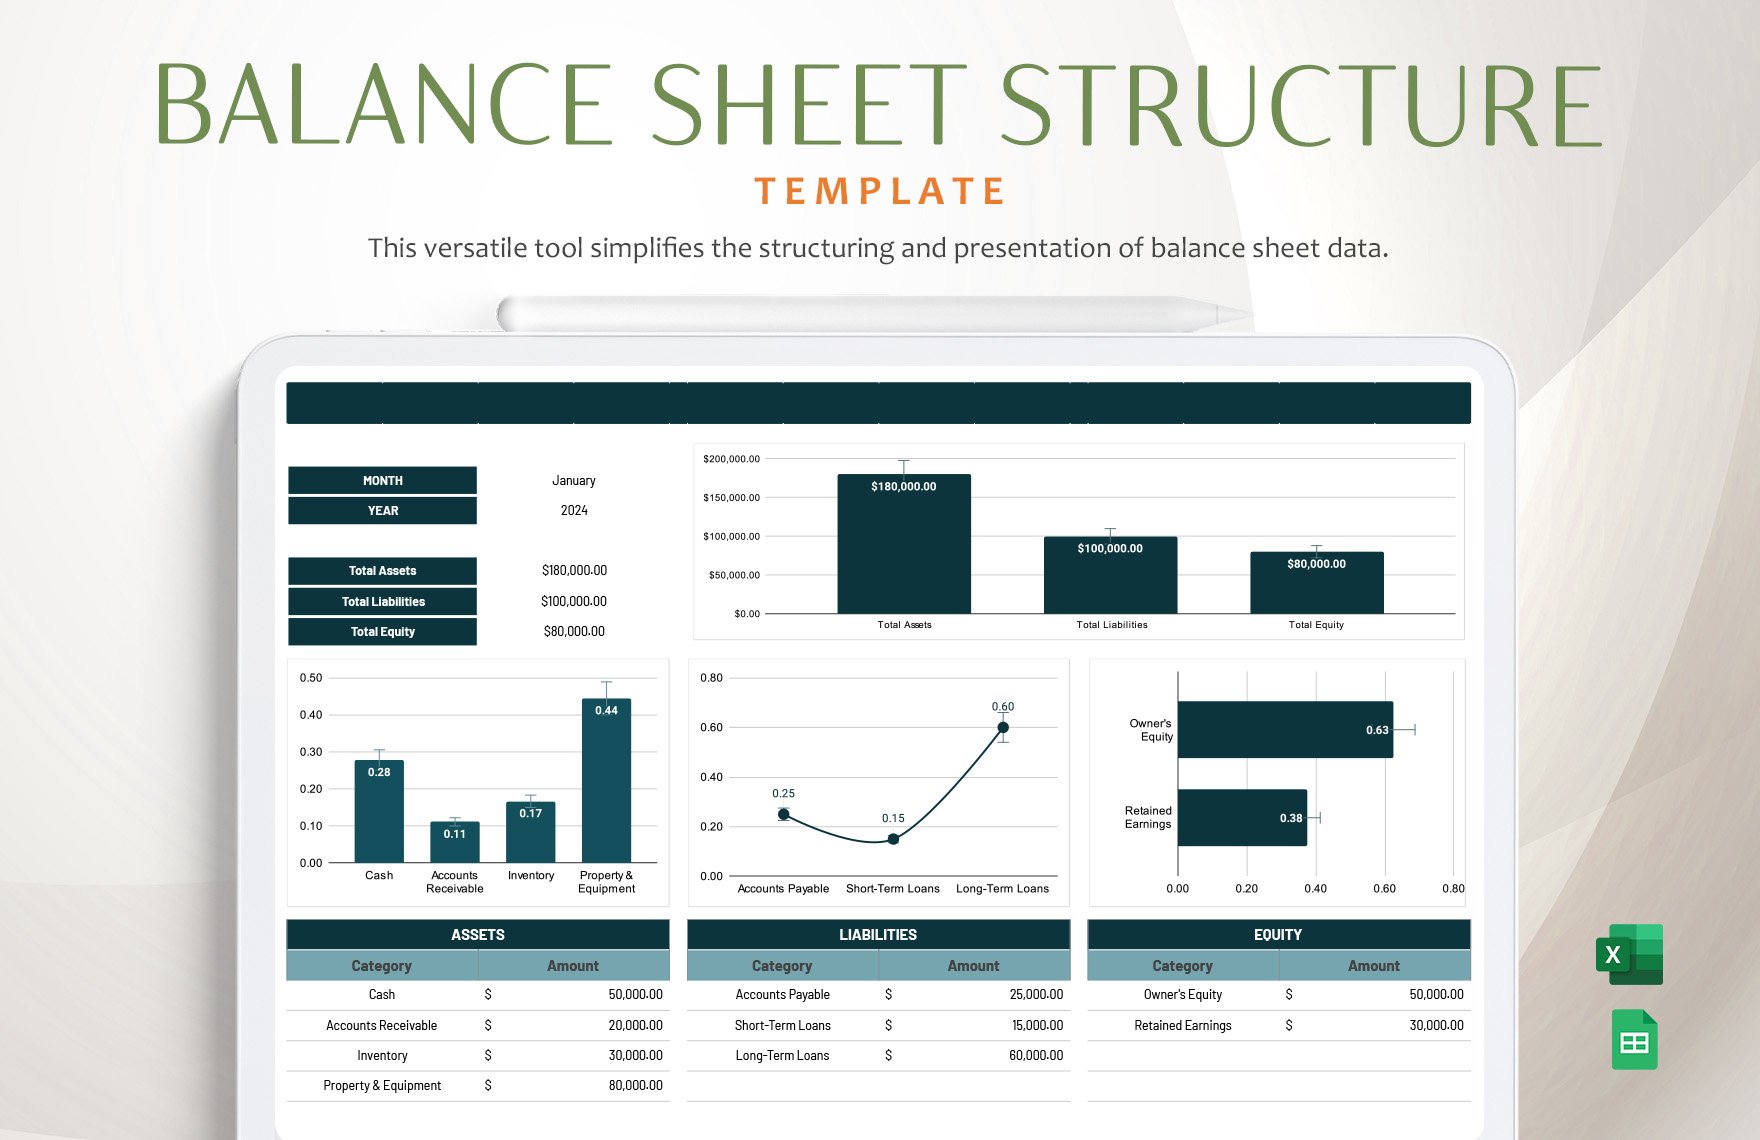 Balance Sheet Structure Template